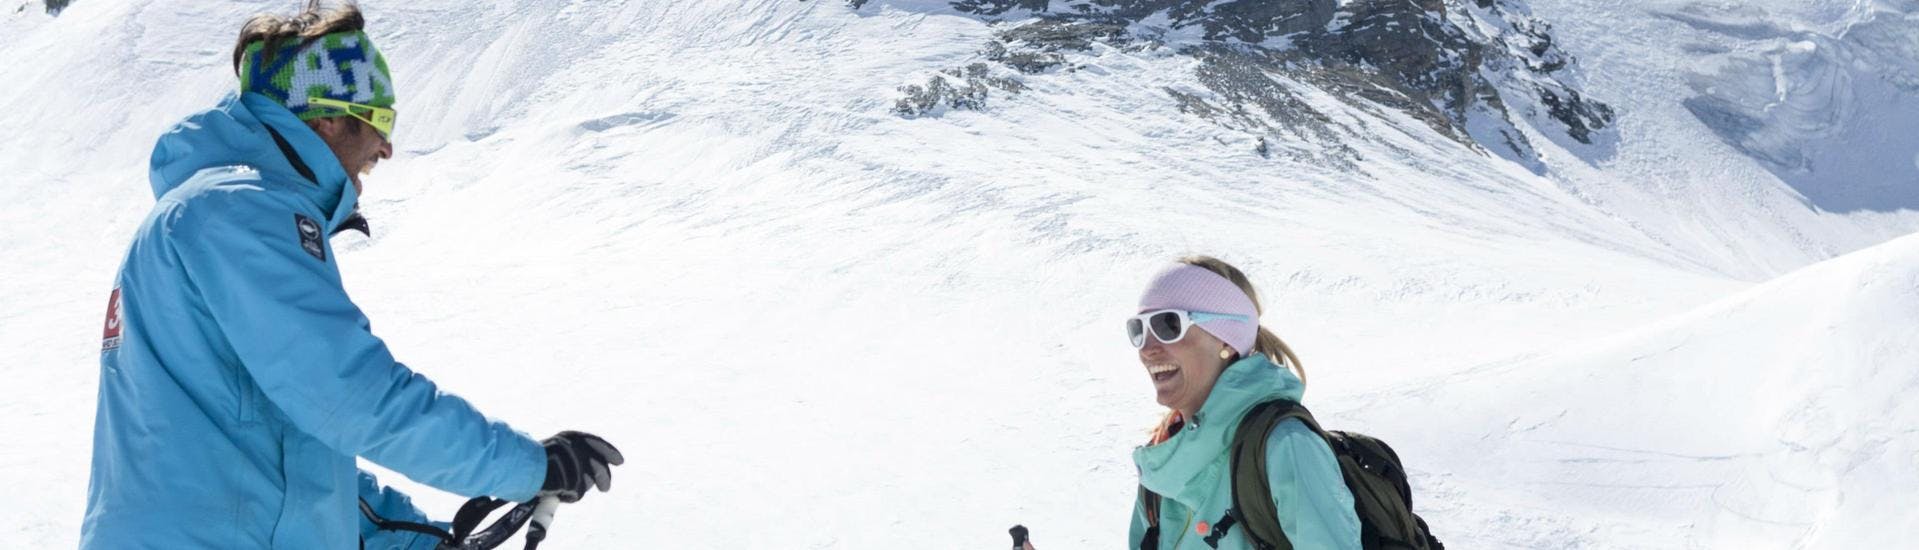 Der Skilehrer der Skischule 333 gibt seinen Schülern wertvolle Tipps während des Privatskikurses für Erwachsene - Val d'Isère.